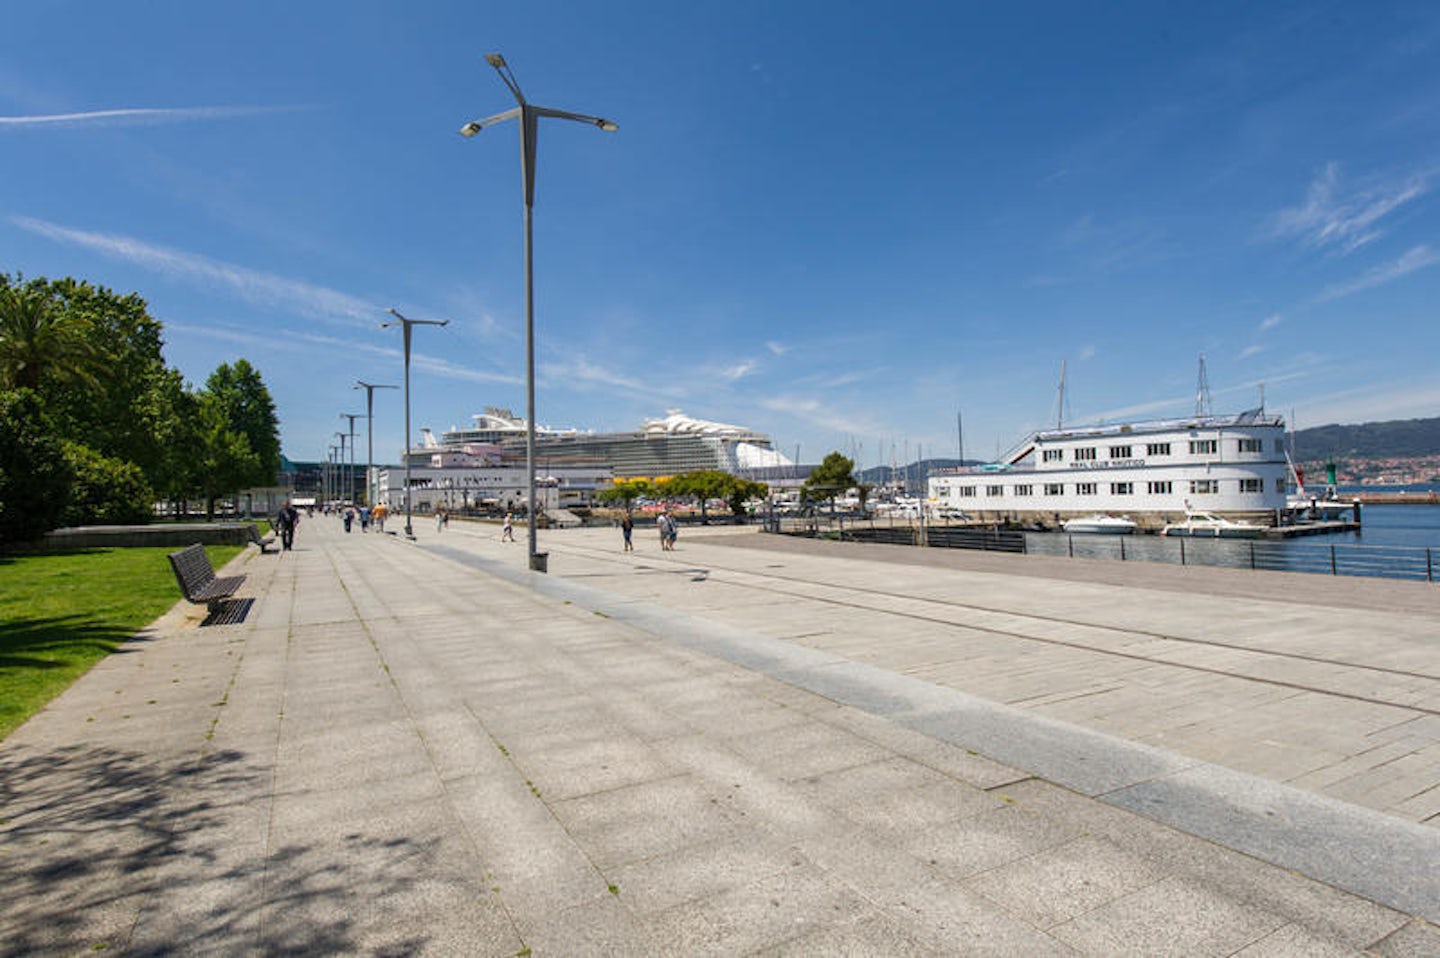 Vigo Port